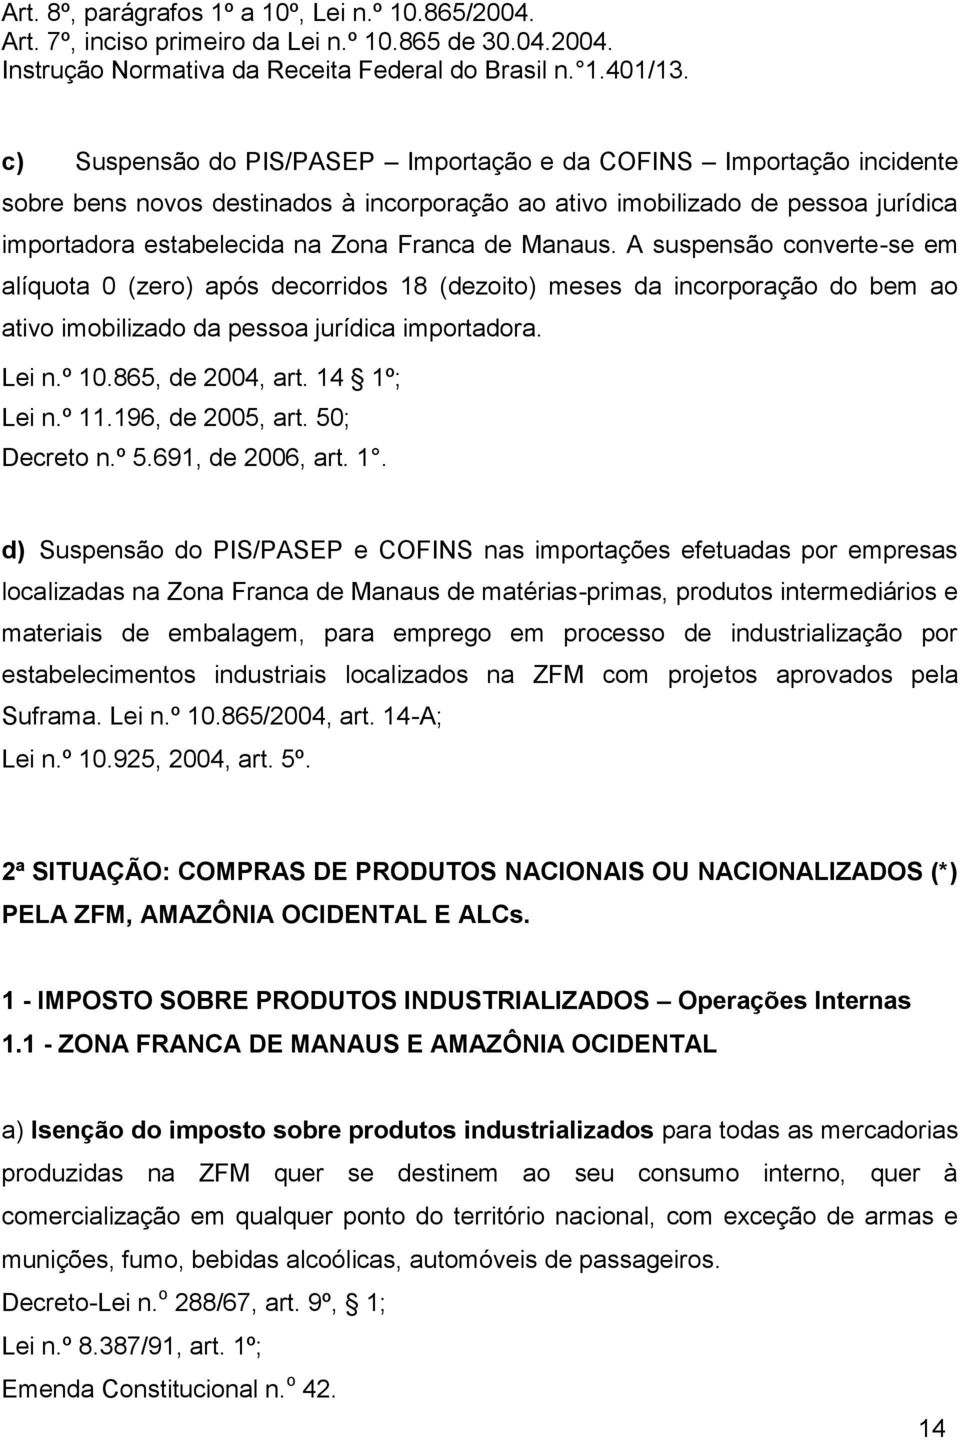 Manaus. A suspensão converte-se em alíquota 0 (zero) após decorridos 18 (dezoito) meses da incorporação do bem ao ativo imobilizado da pessoa jurídica importadora. Lei n.º 10.865, de 2004, art.